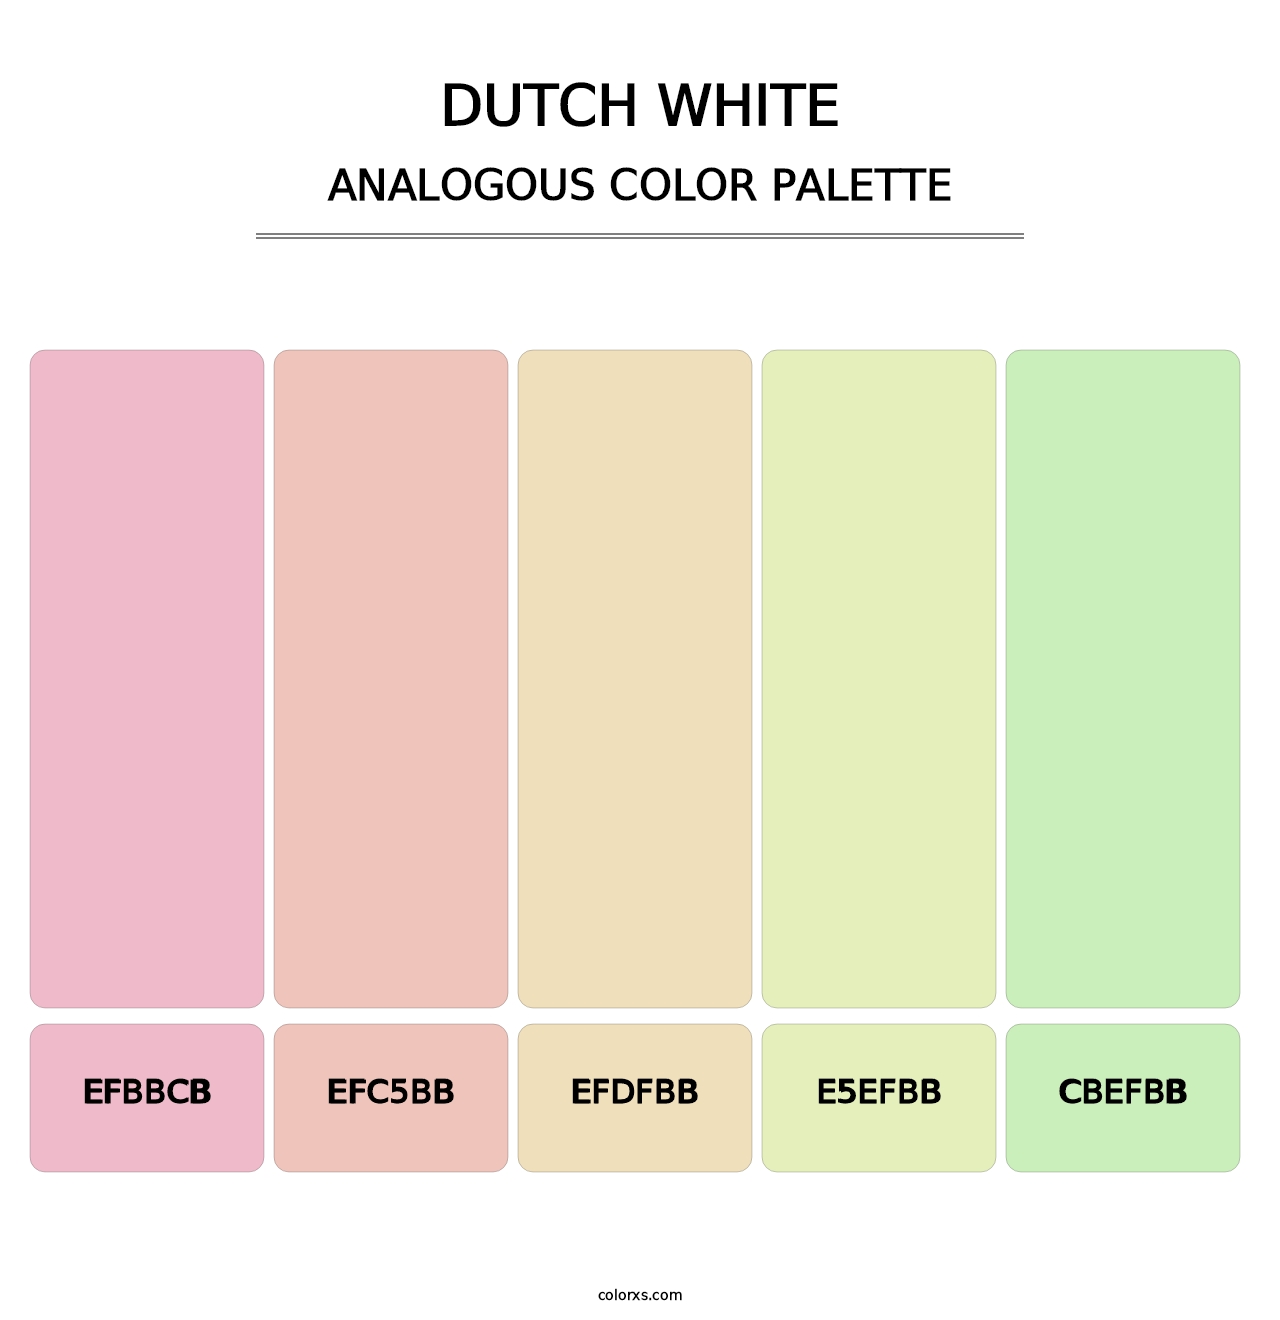 Dutch White - Analogous Color Palette